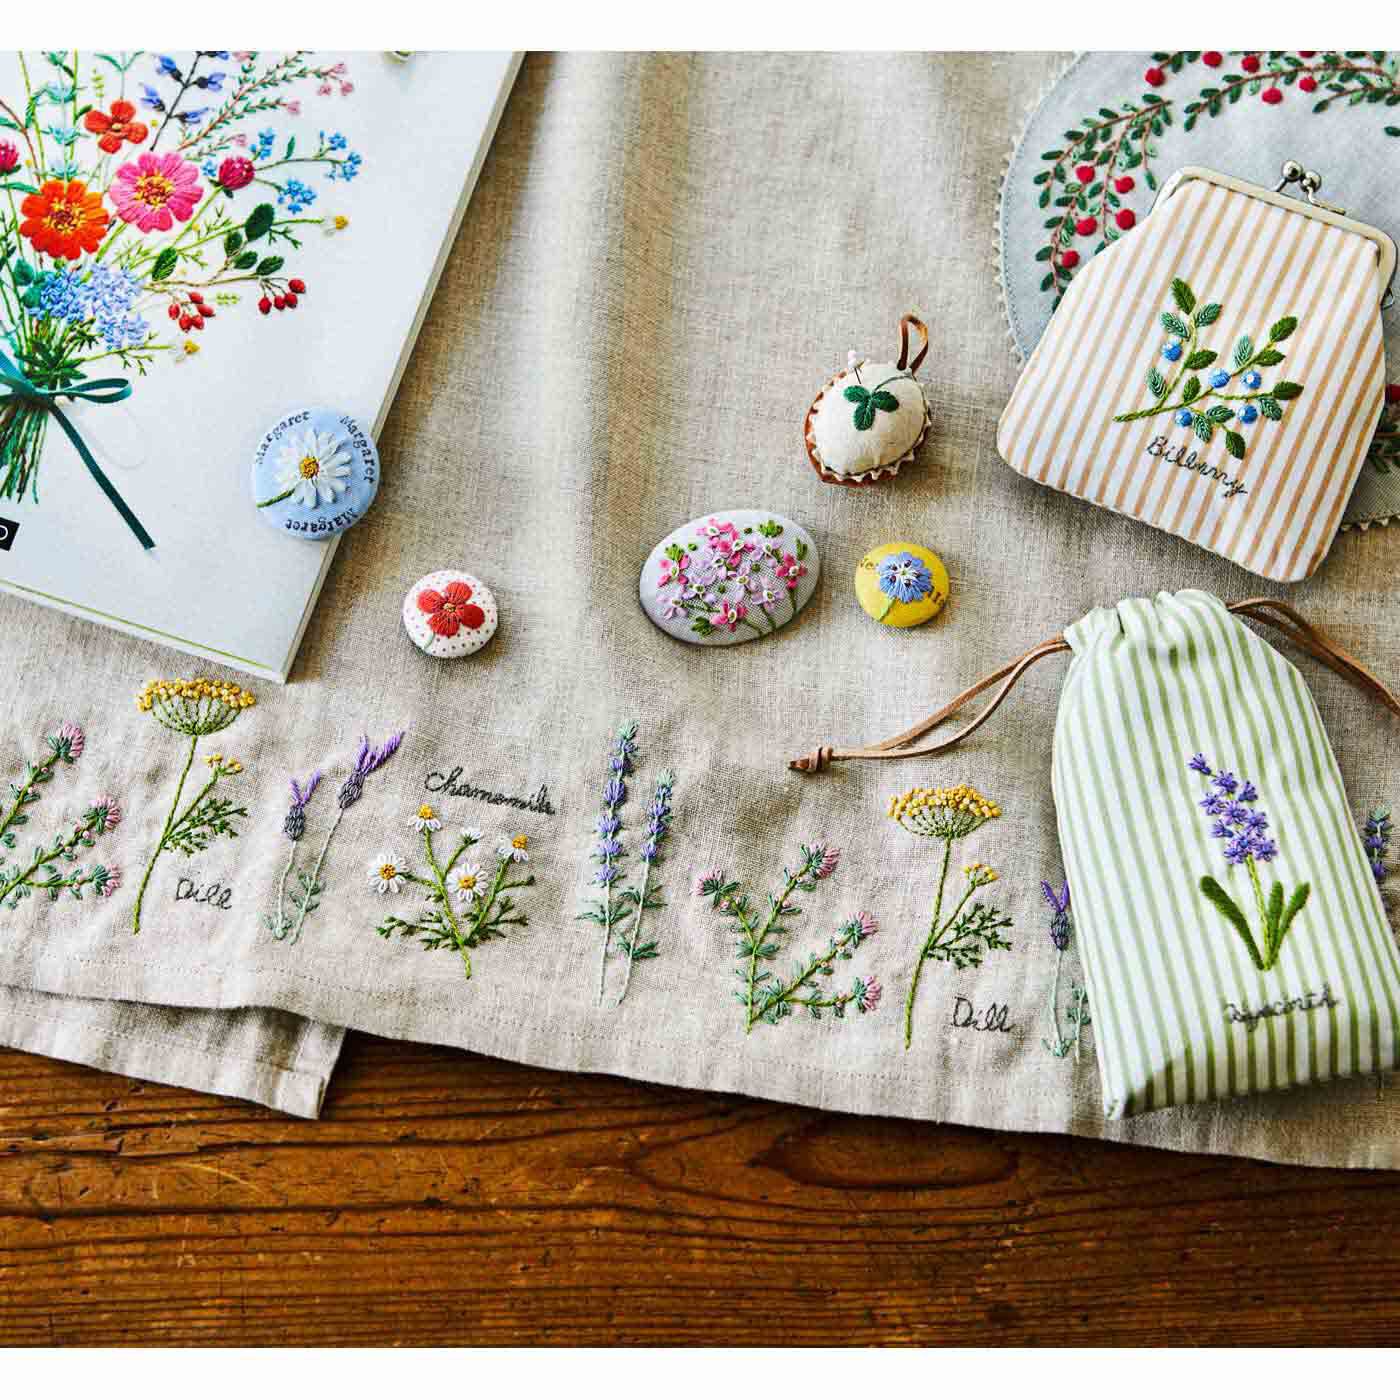 クチュリエ|季節のお花で暮らしに彩りを 187の刺繍デザイン 青木 和子さんのお庭から